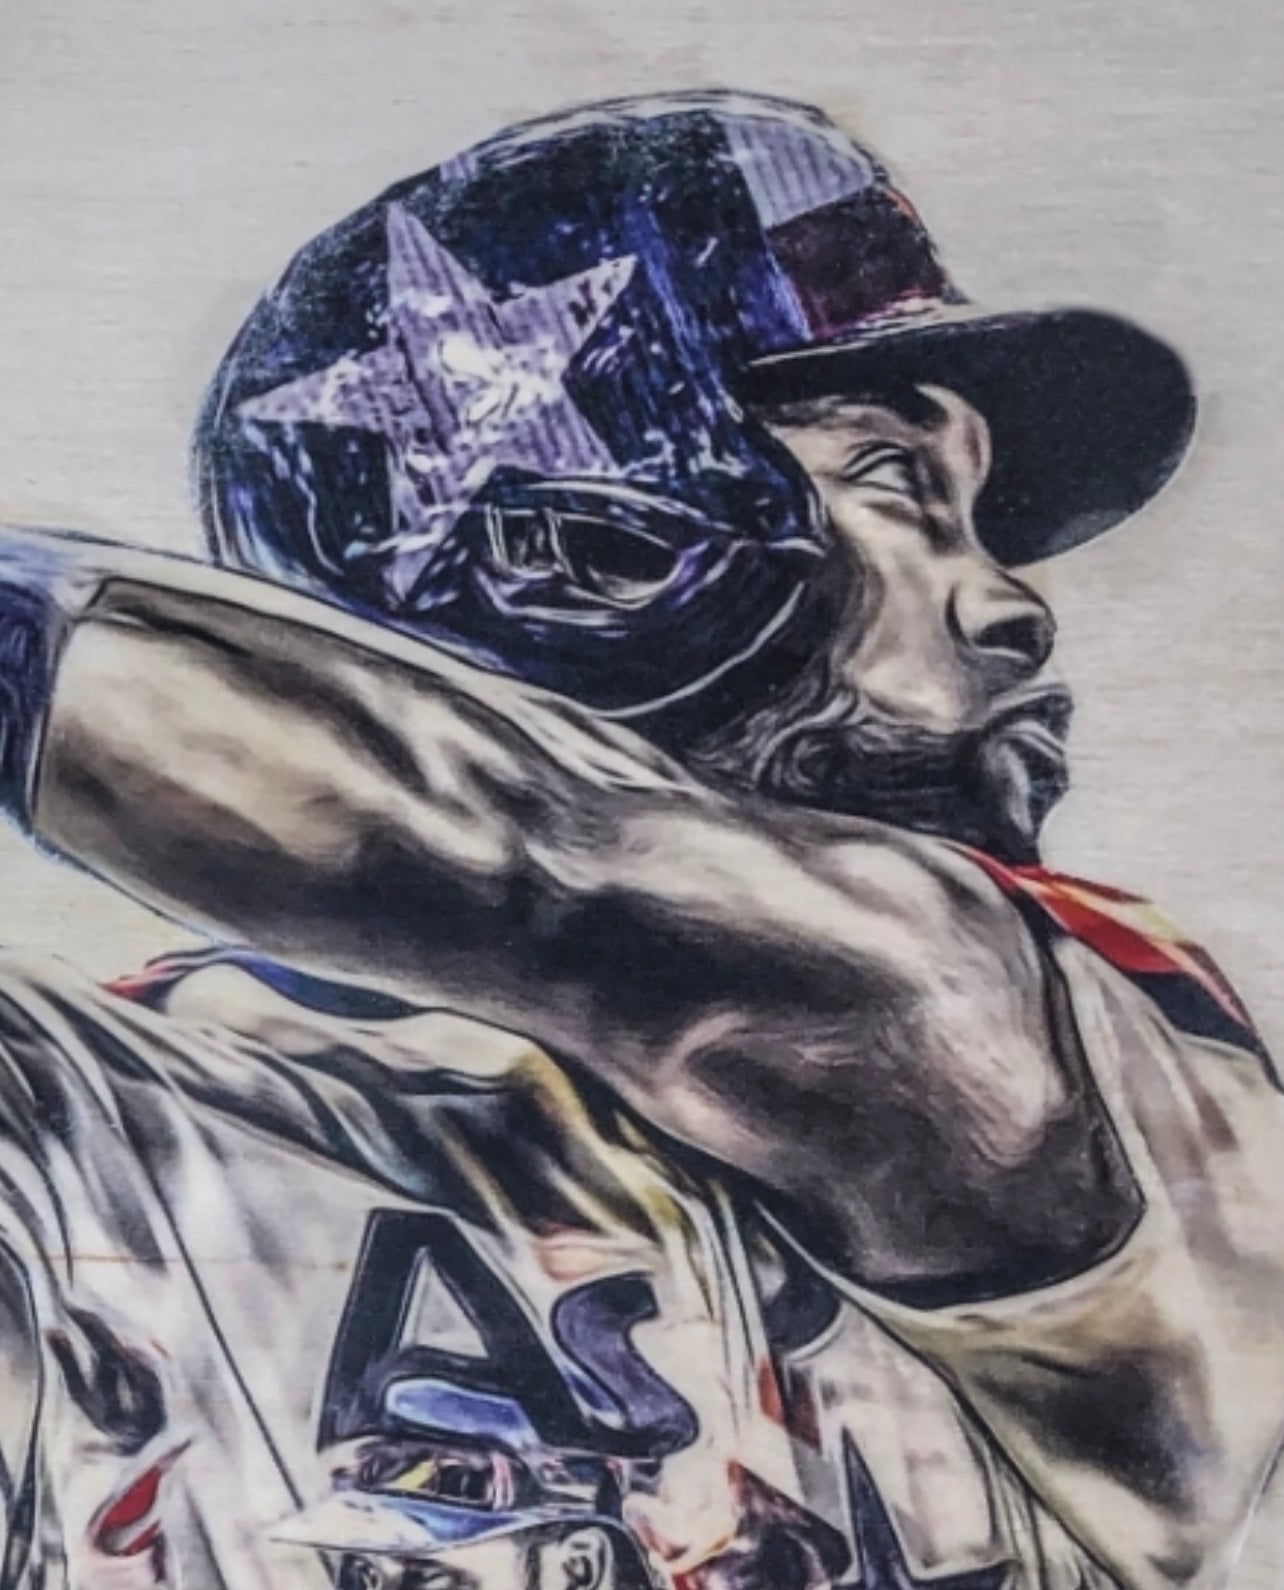 MLB Baseball Yordanalvarez Yordan Alvarez Yordan Alvarez Houston Astros  Houstonastros Art Print